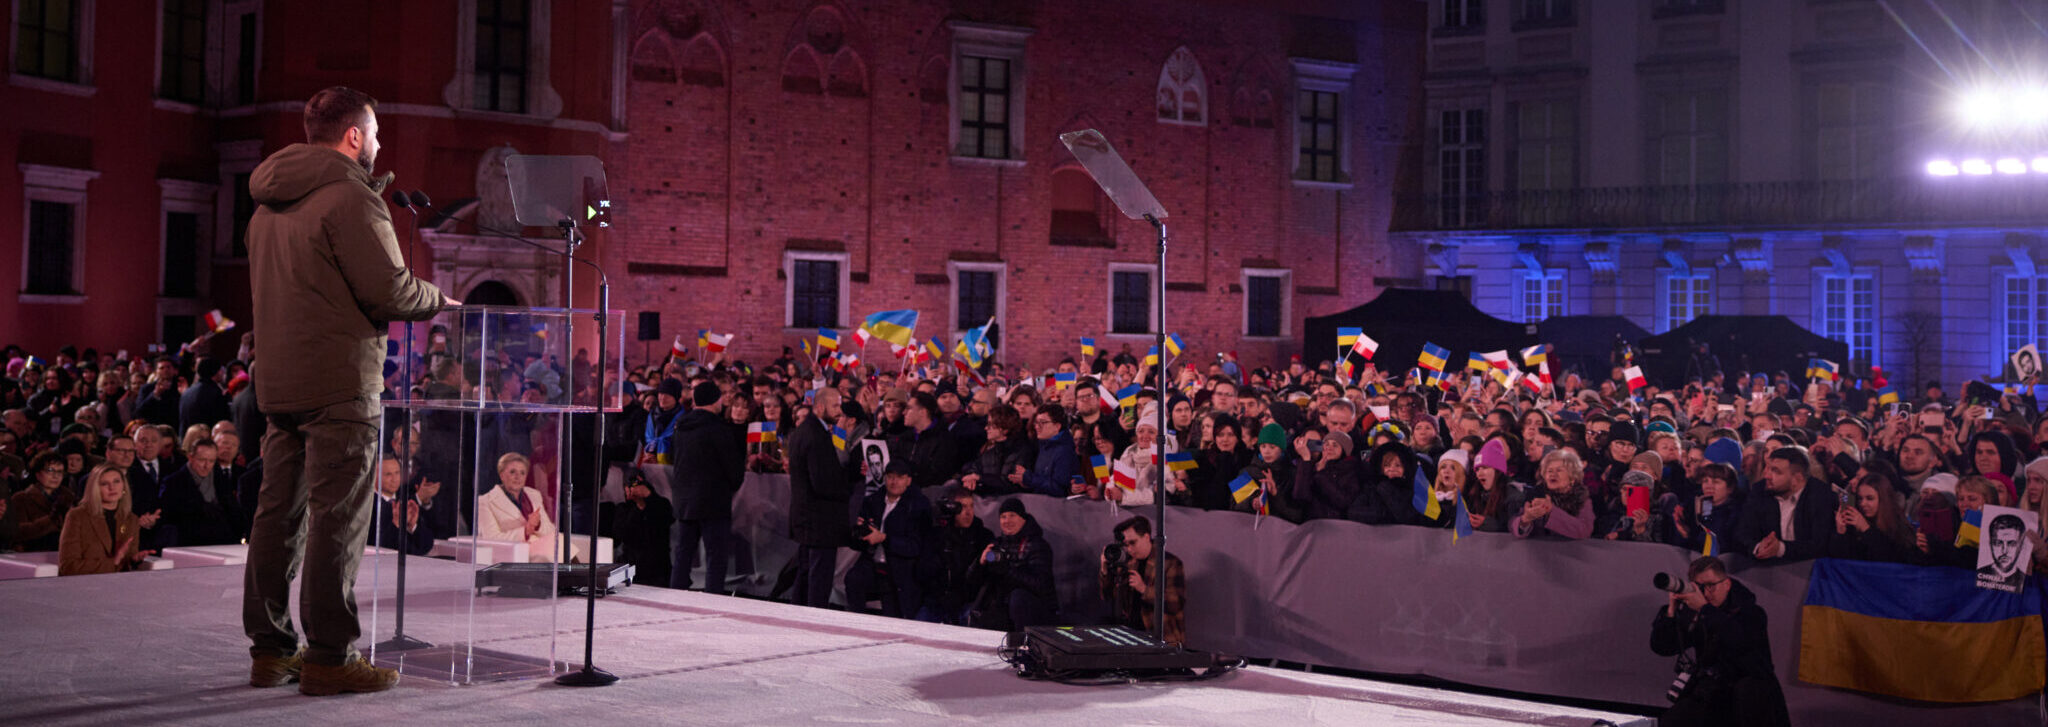 Президент України виступив у Варшаві з промовою. Як все відбувалося?